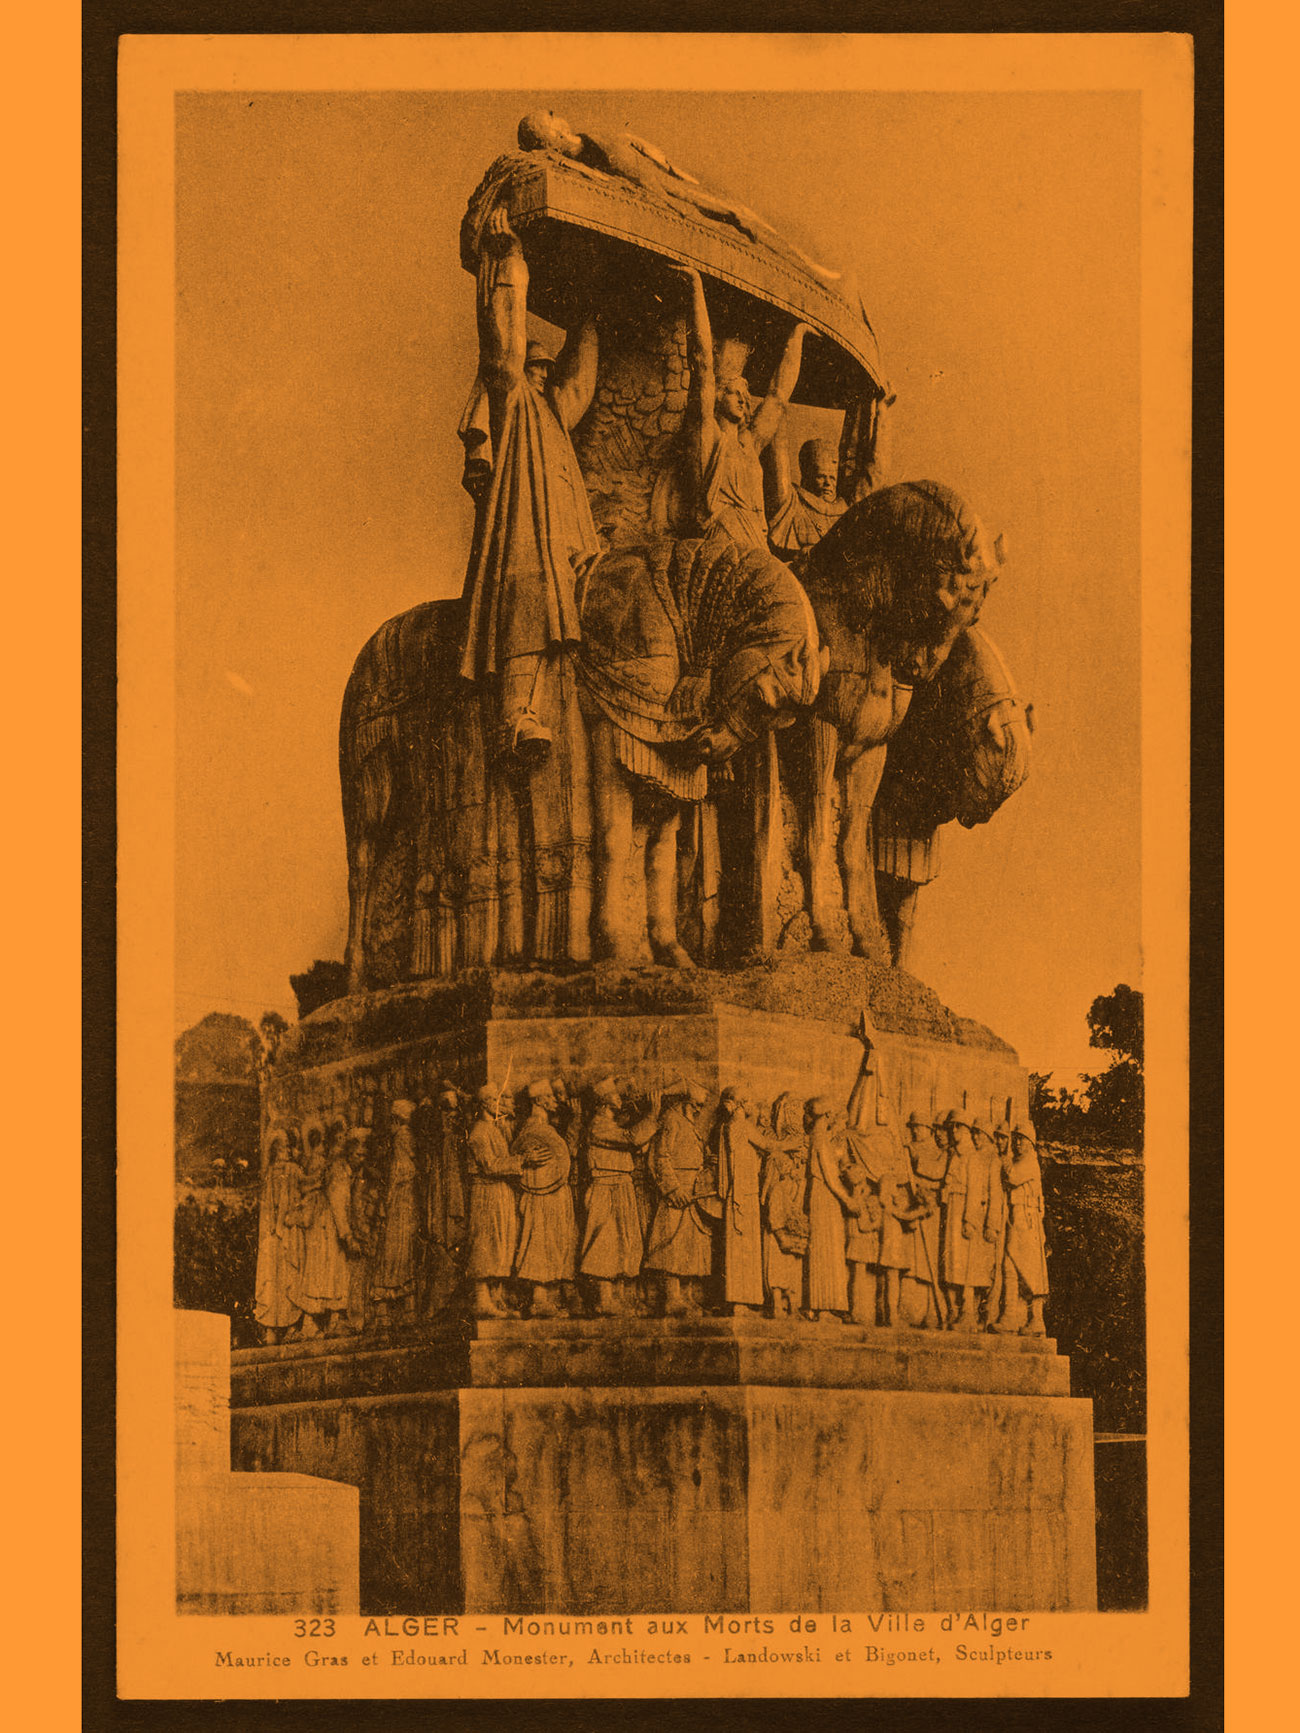 Carte postale_Alger - Monument aux morts de la Ville d'Alger_impression sur papier_apres 1928_Collection MHFA, Montpellier Mediterranne Metropole © MHFA